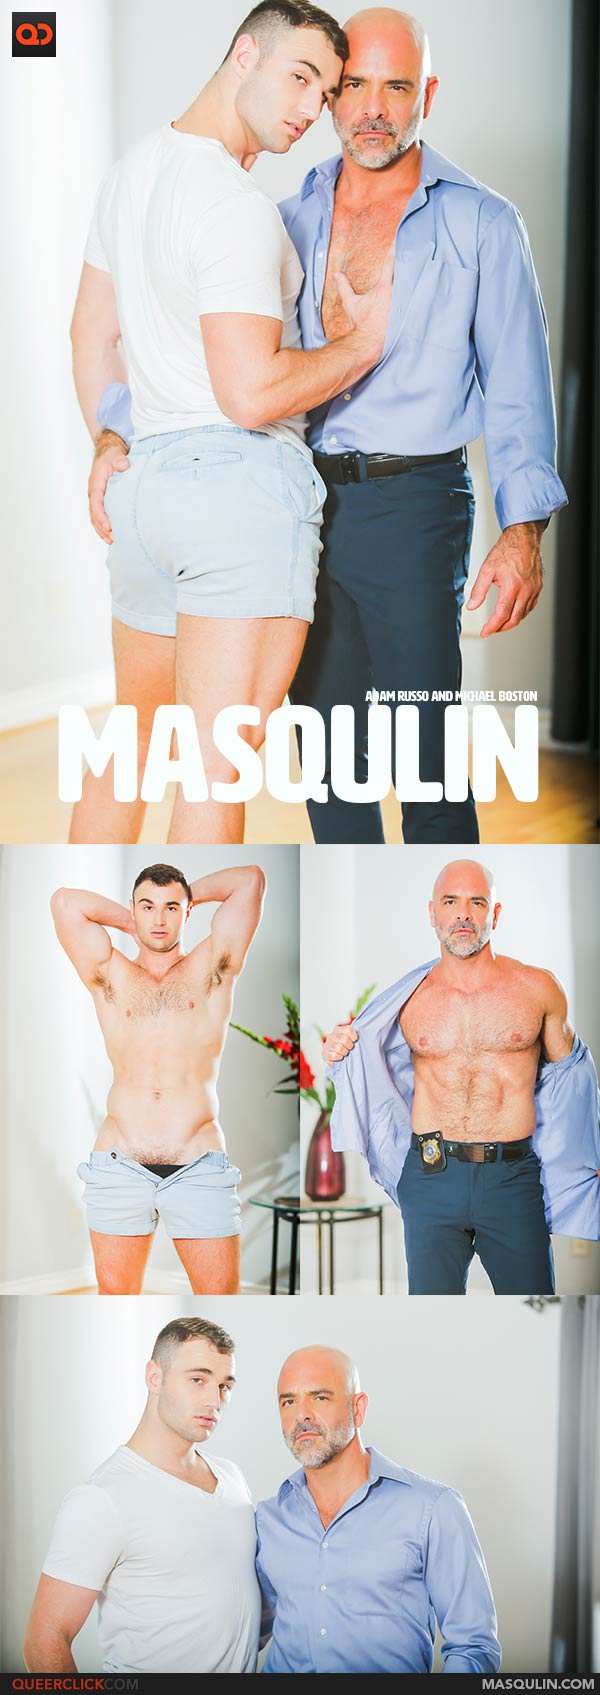 Masqulin: Adam Russo and Michael Boston